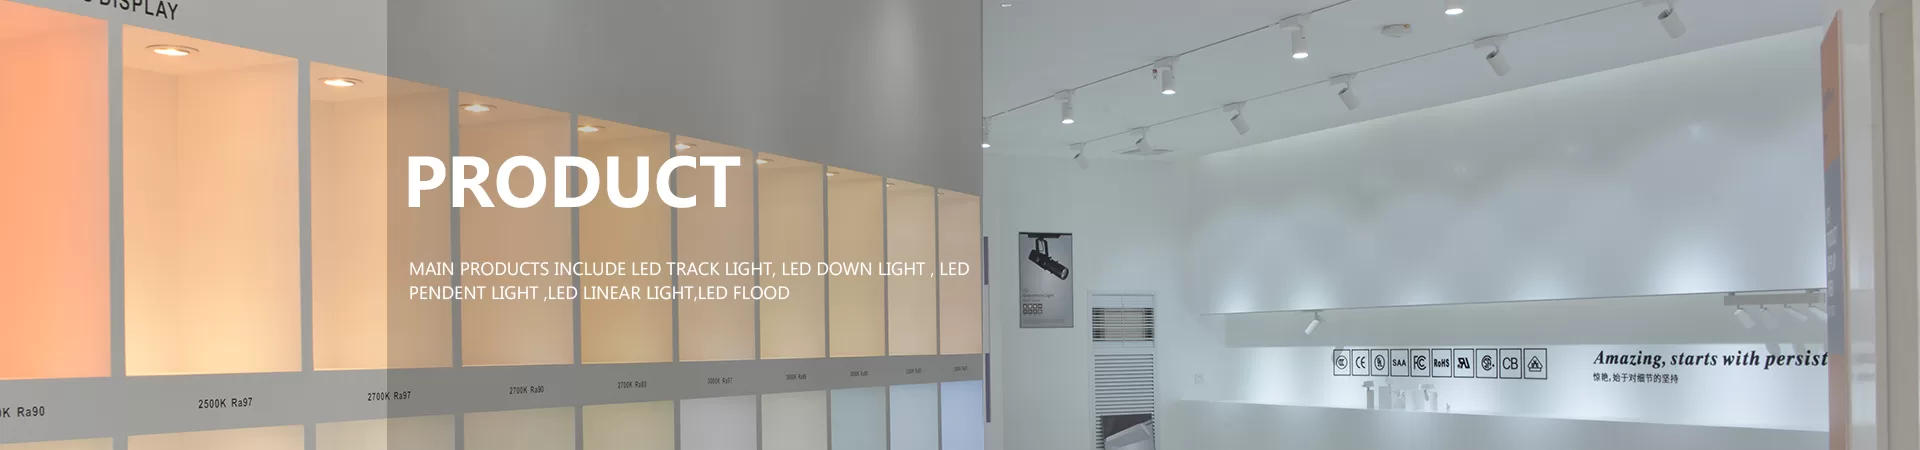 rail lights for ceilings Modern Design-led spotlight Customizable